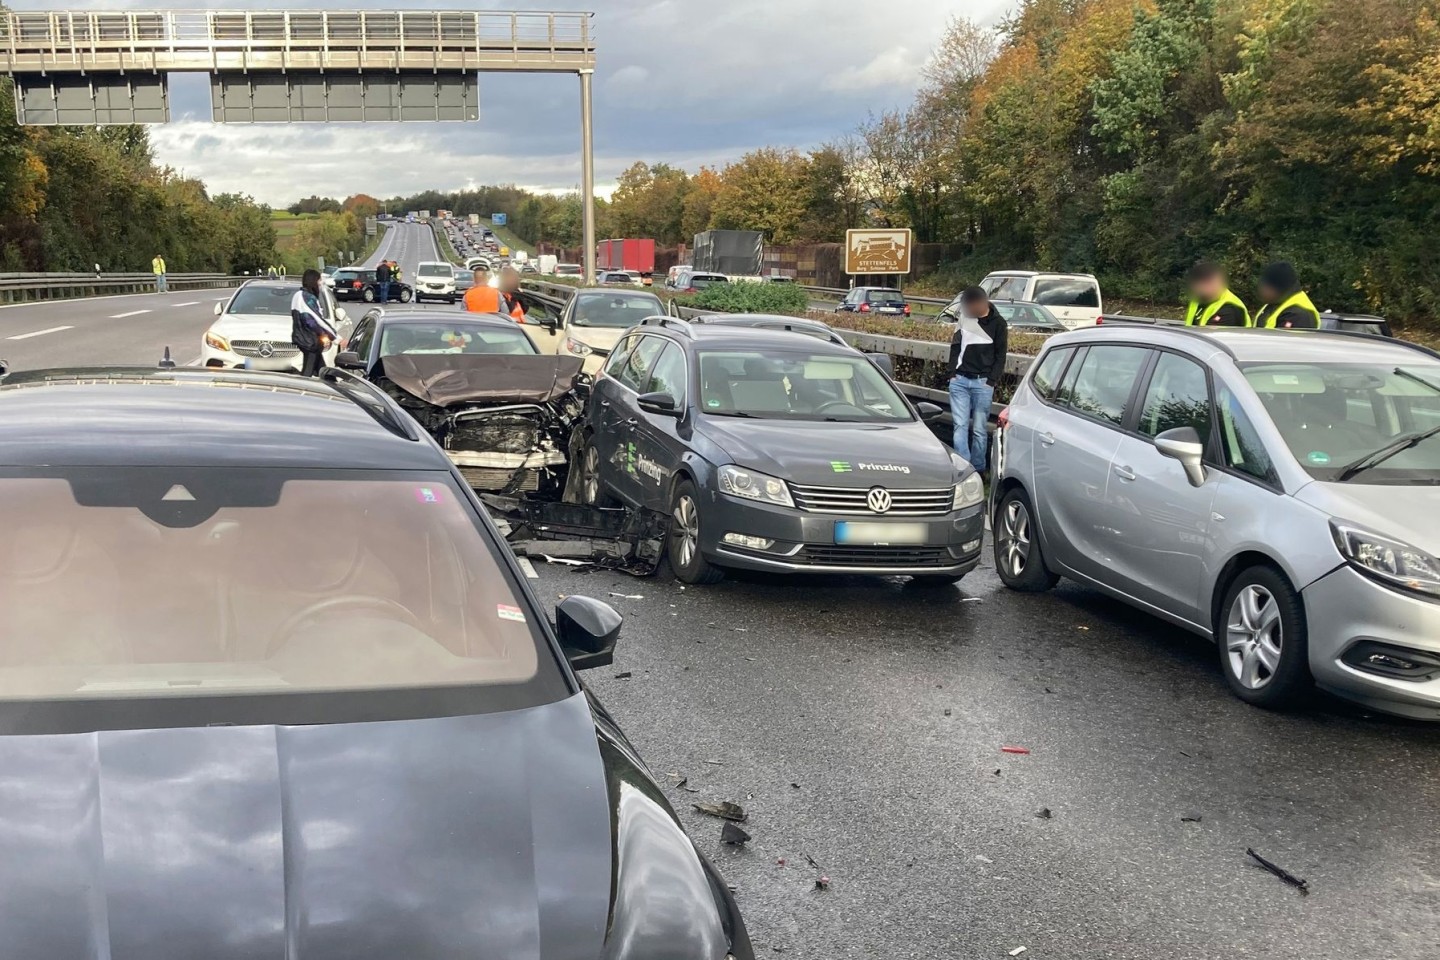 Bei mehreren Massenkarambolagen auf der Autobahn nahe Heilbronn sind am Freitagnachmittag Dutzende Fahrzeuge an insgesamt 17 verschiedenen Unfallstellen aufeinandergefahren.